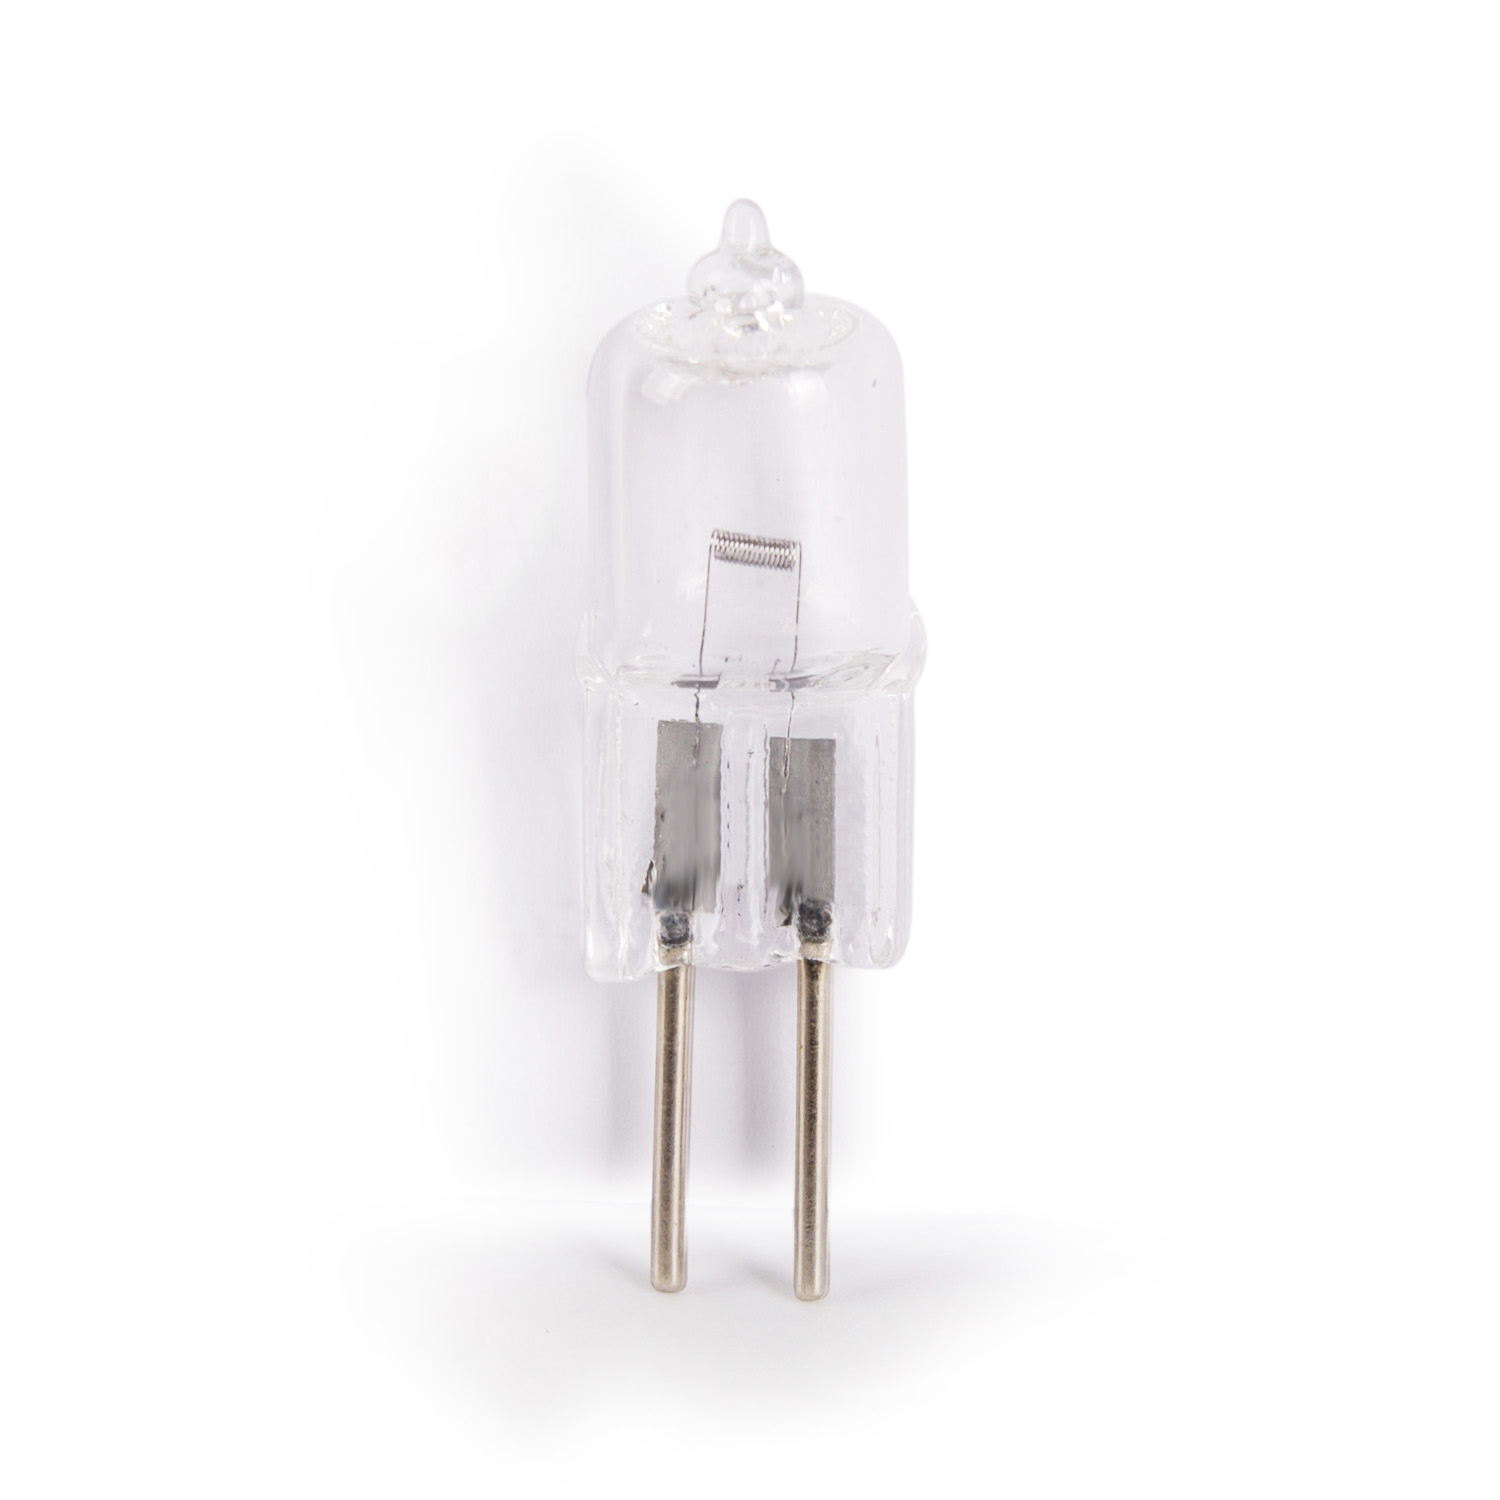 LT03043 12v 50w GY6.35 dental unit bulb 